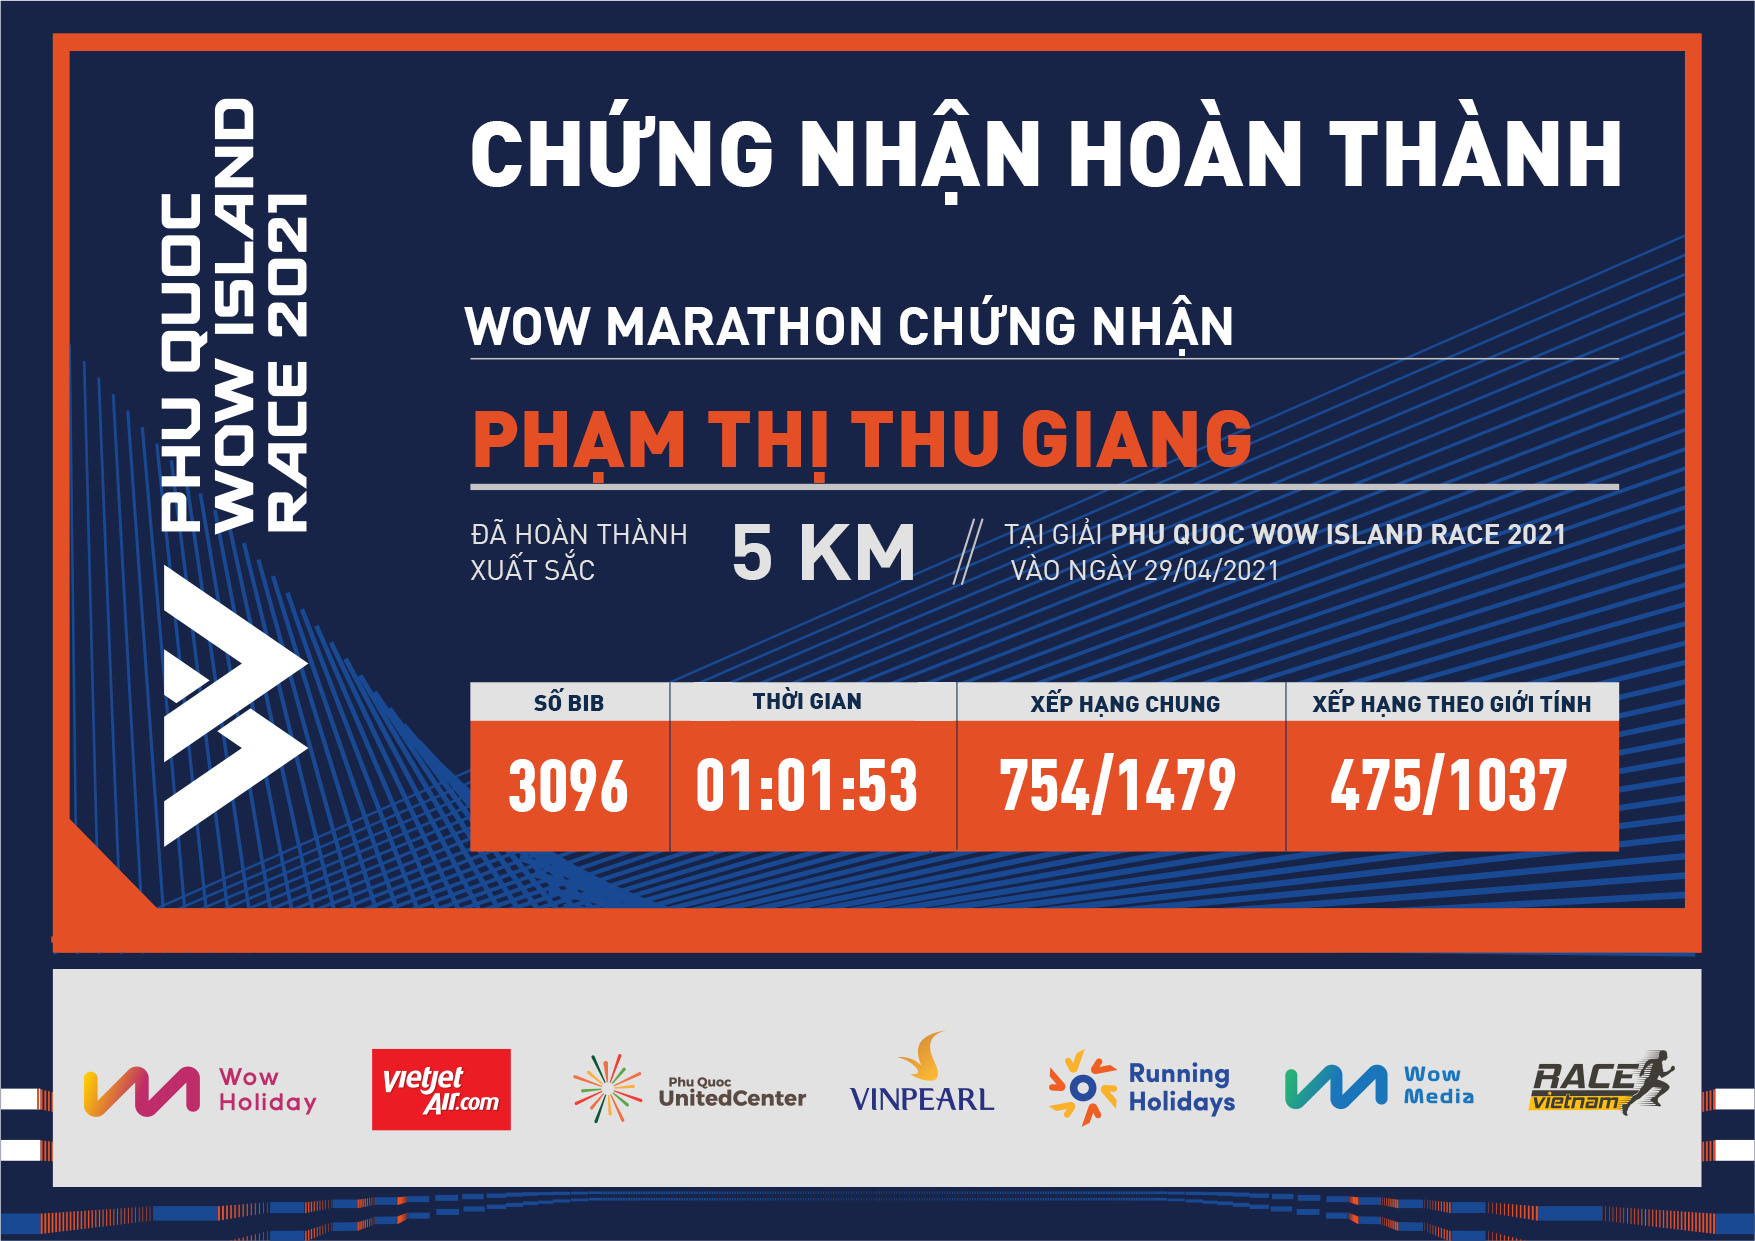 3096 - Phạm Thị Thu Giang